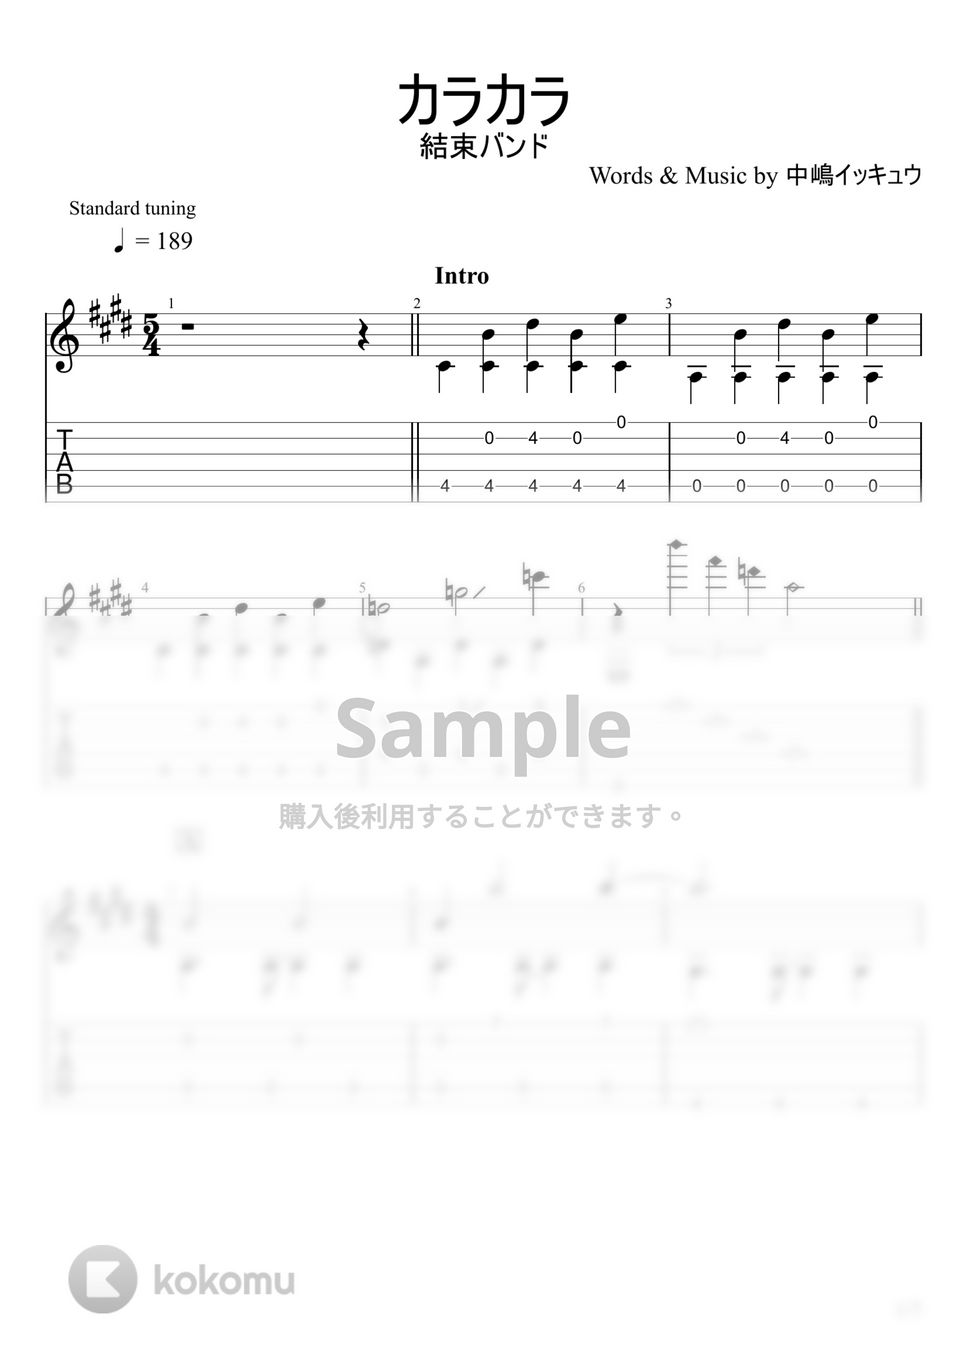 結束バンド - カラカラ (ソロギター) by u3danchou